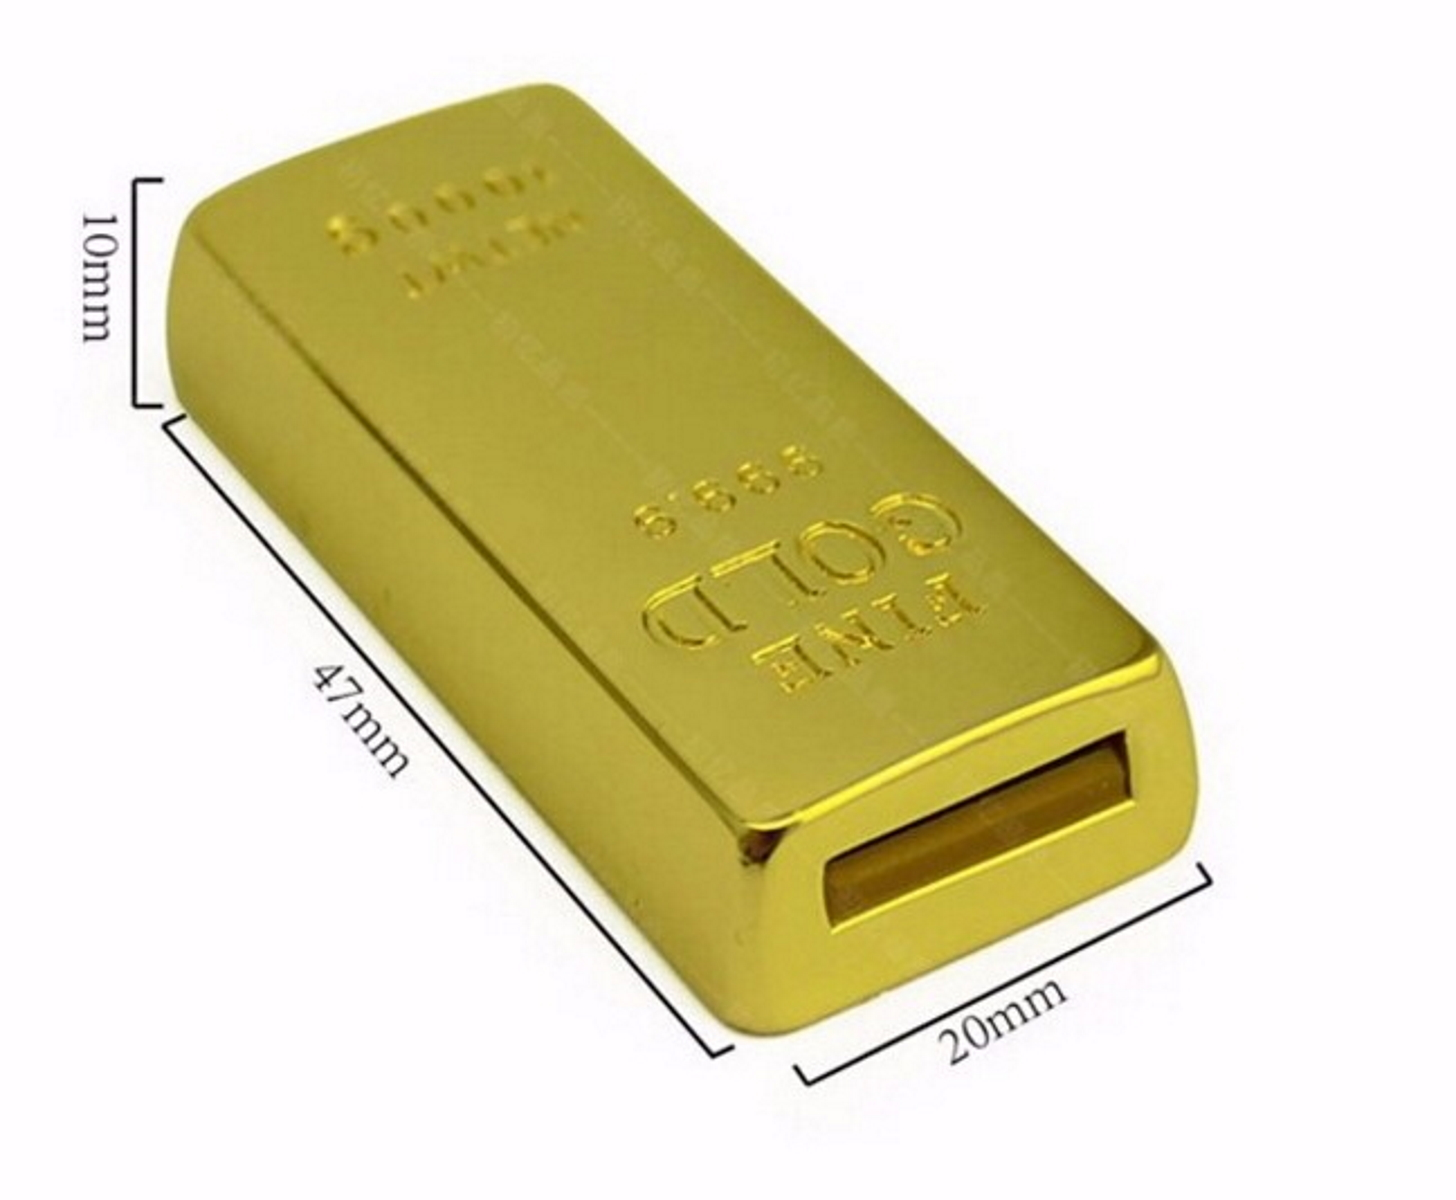 ® GERMANY (Gold, USB Goldbarren USB-Stick GB) 2